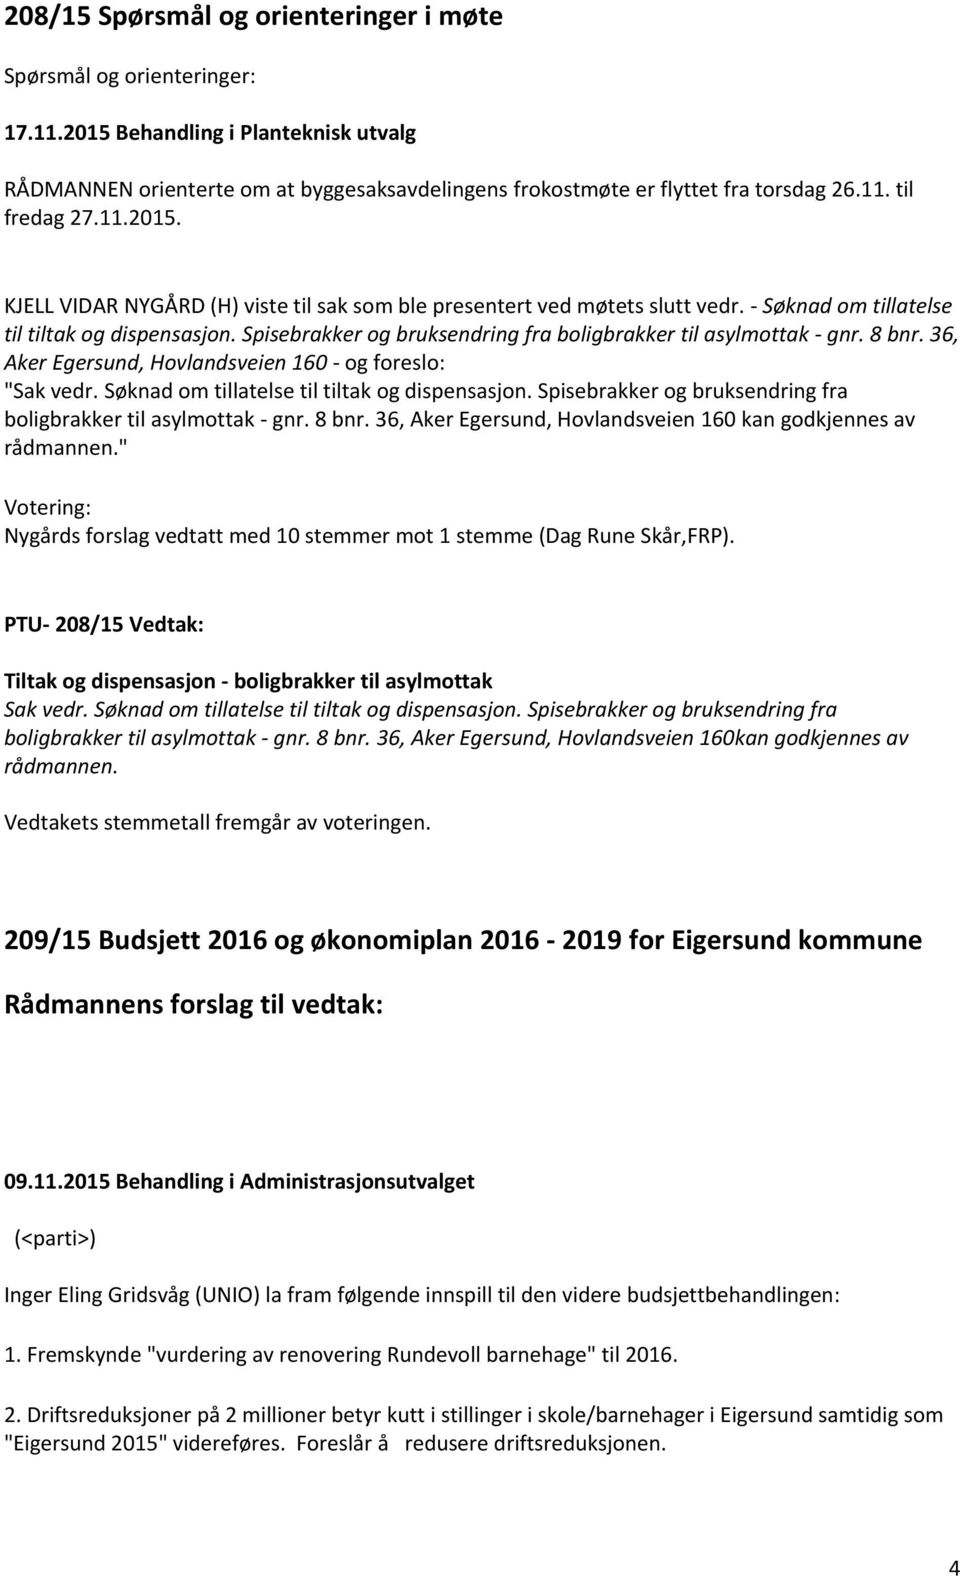 8 bnr. 36, Aker Egersund, Hovlandsveien 160 - og foreslo: "Sak vedr. Søknad om tillatelse til tiltak og dispensasjon. Spisebrakker og bruksendring fra boligbrakker til asylmottak - gnr. 8 bnr.